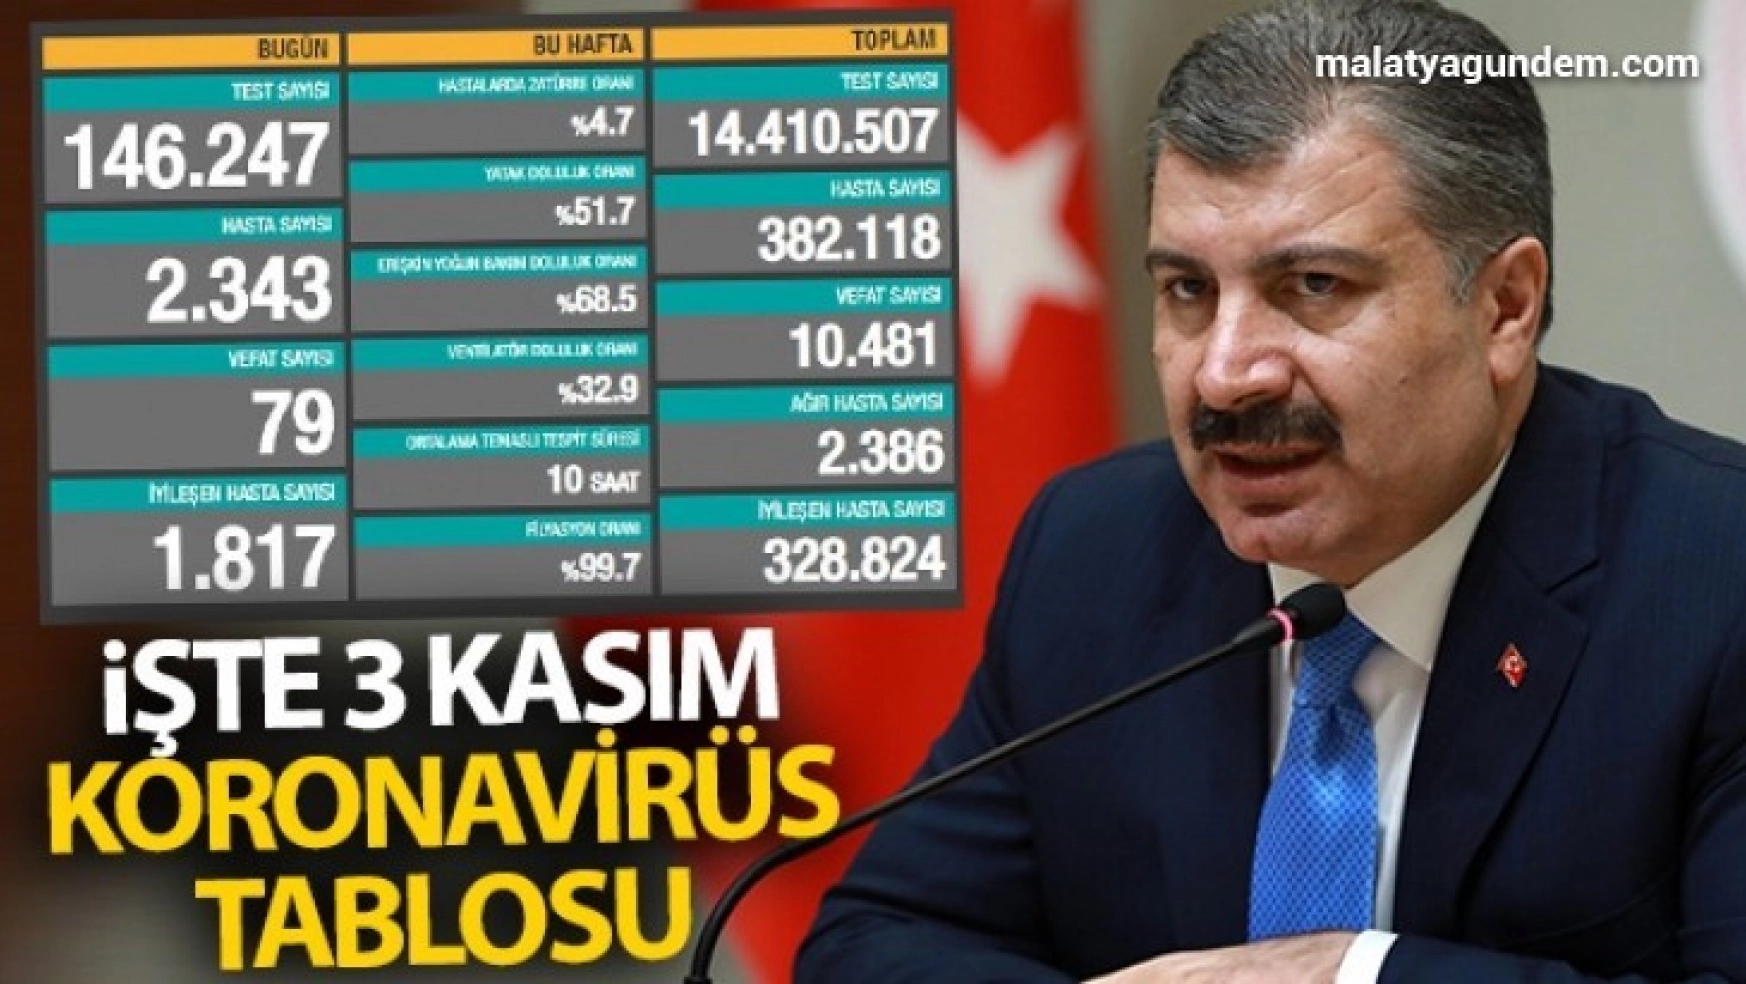 Türkiye'de son 24 saatte 2343 kişiye Kovid-19 hastalık tanısı konuldu, 79 kişi hayatını kaybetti